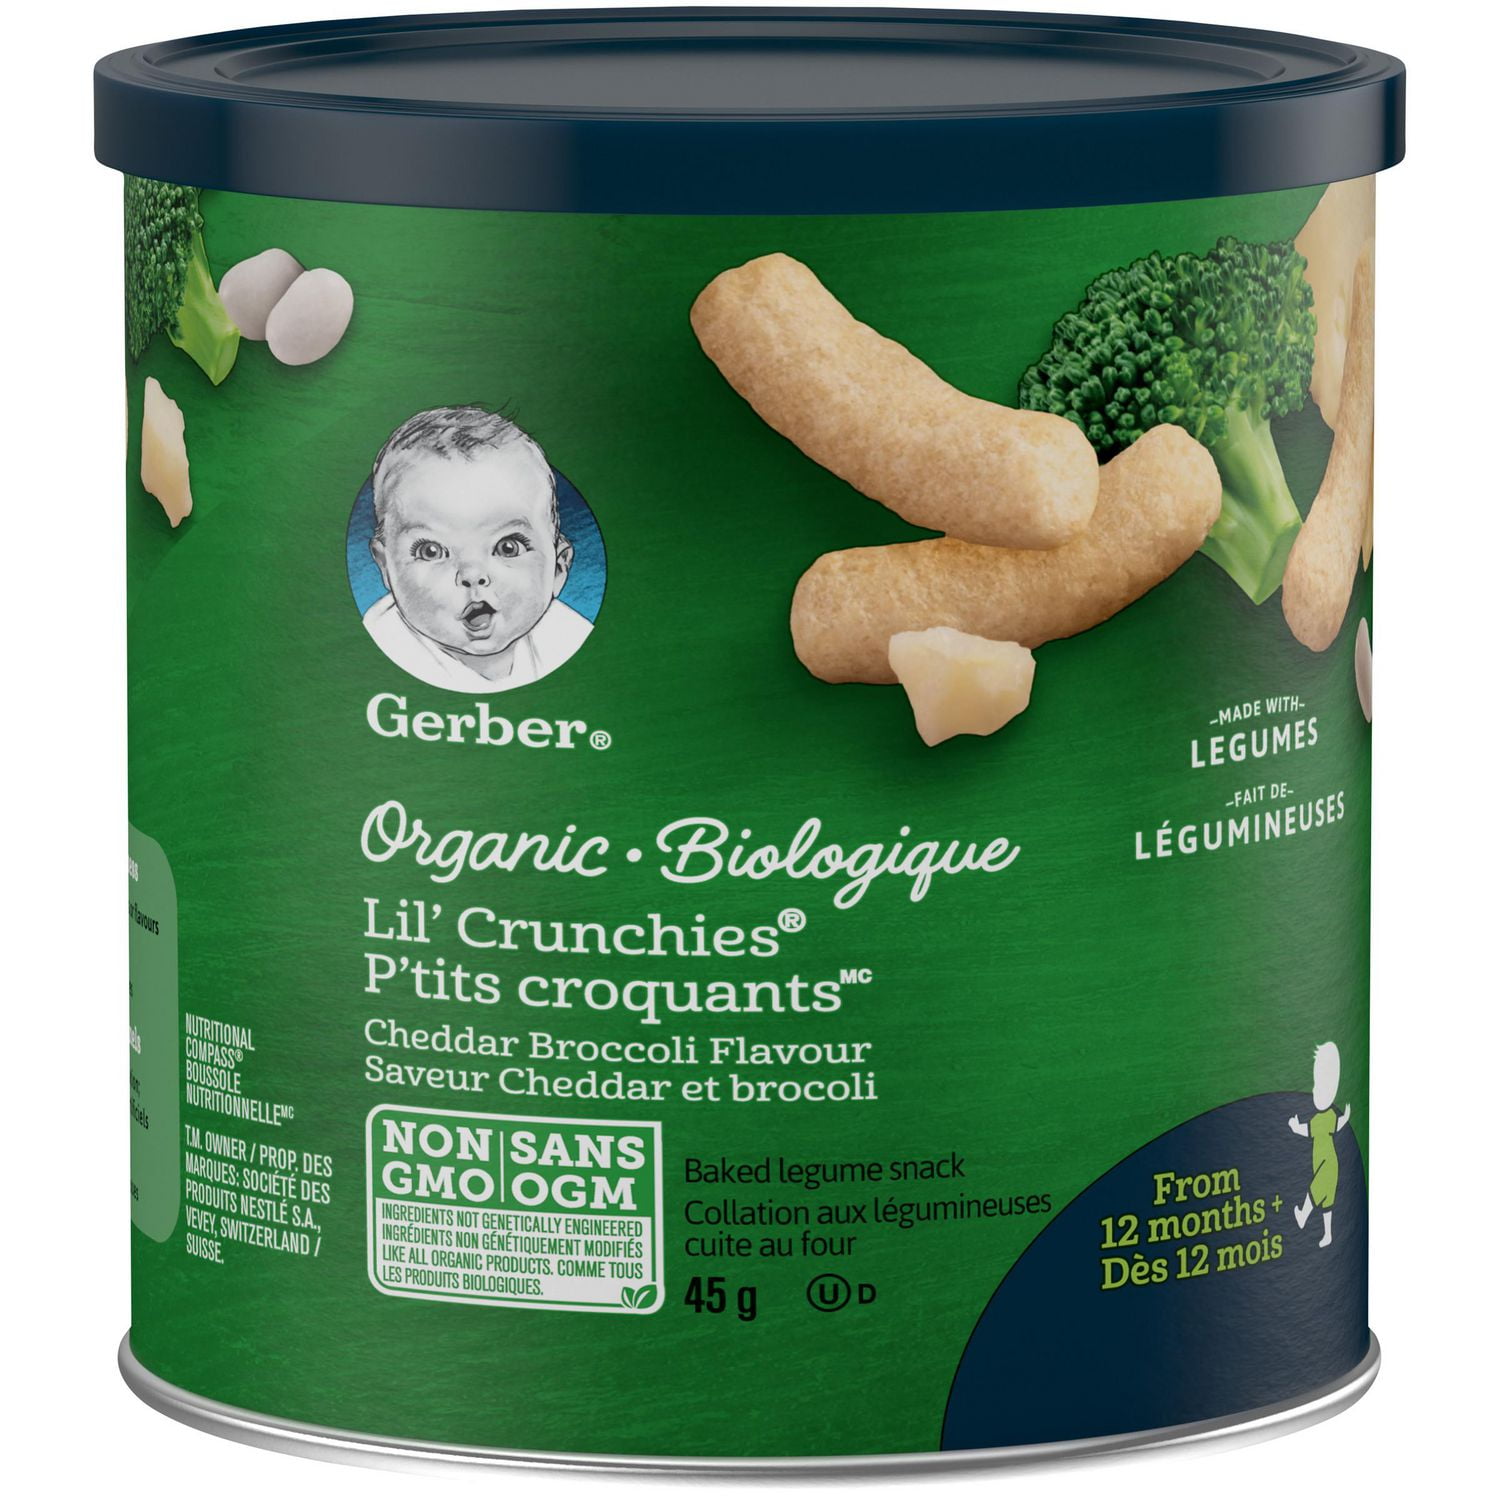 Gerber collation au maïs cuite au four au cheddar doux pour bébés p'tits  croquants (42 g) - lil' crunchies mild cheddar toddler snacks (42 g), Delivery Near You